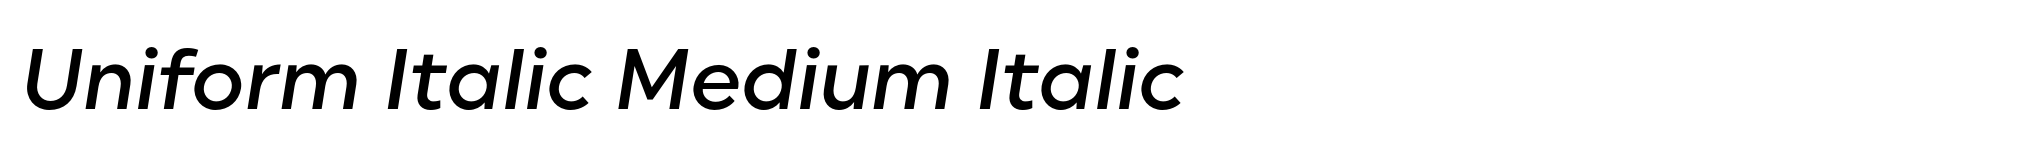 Uniform Italic Medium Italic image